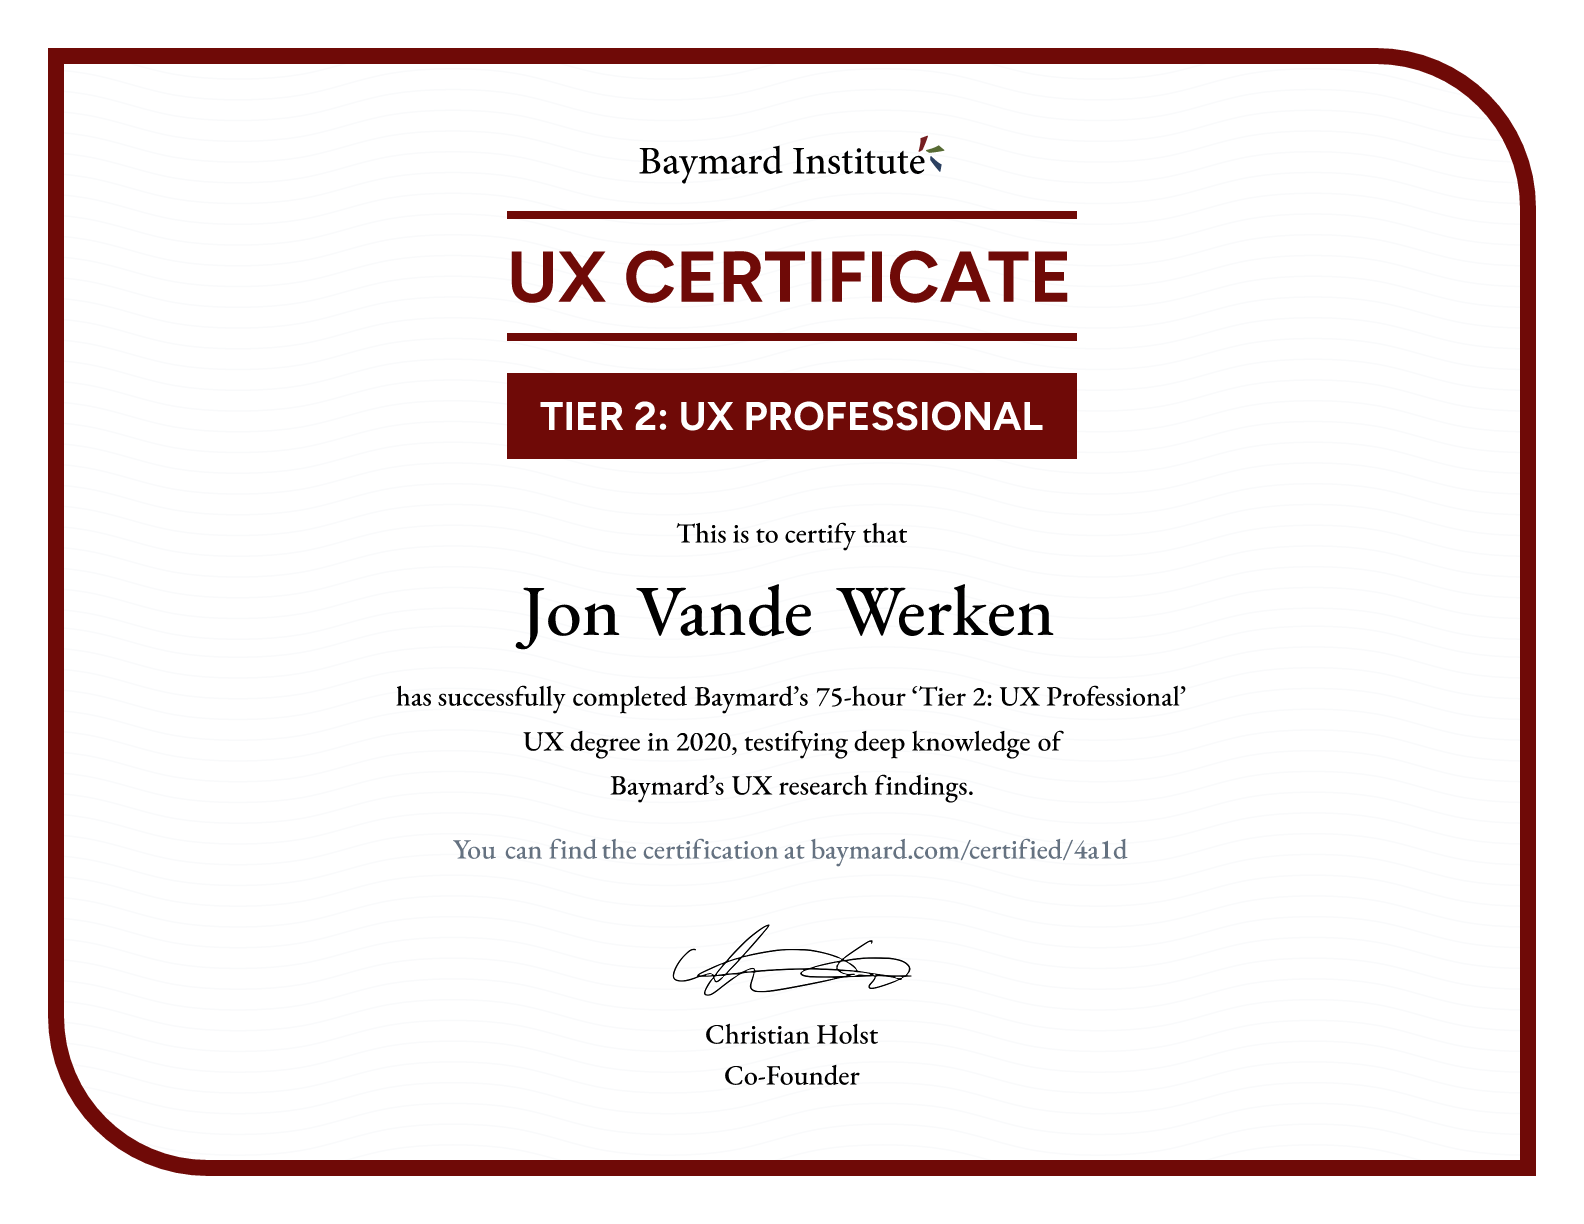 Jon Vande Werken’s certificate